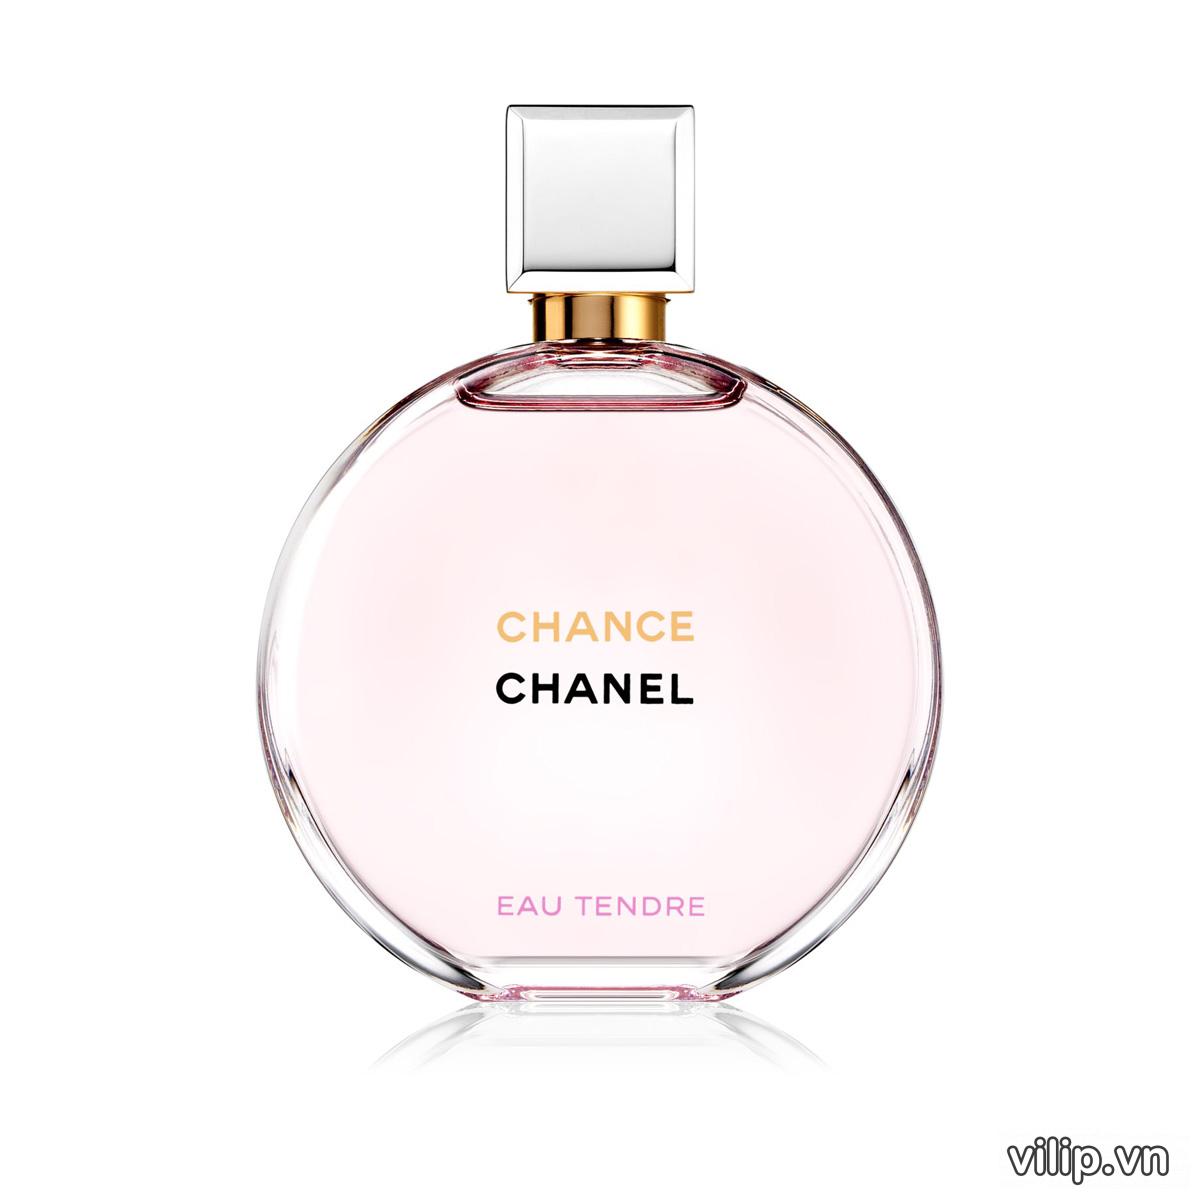 GARDÉNIA LES EXCLUSIFS DE CHANEL  Parfum Grand Extrait  304 FL OZ   CHANEL